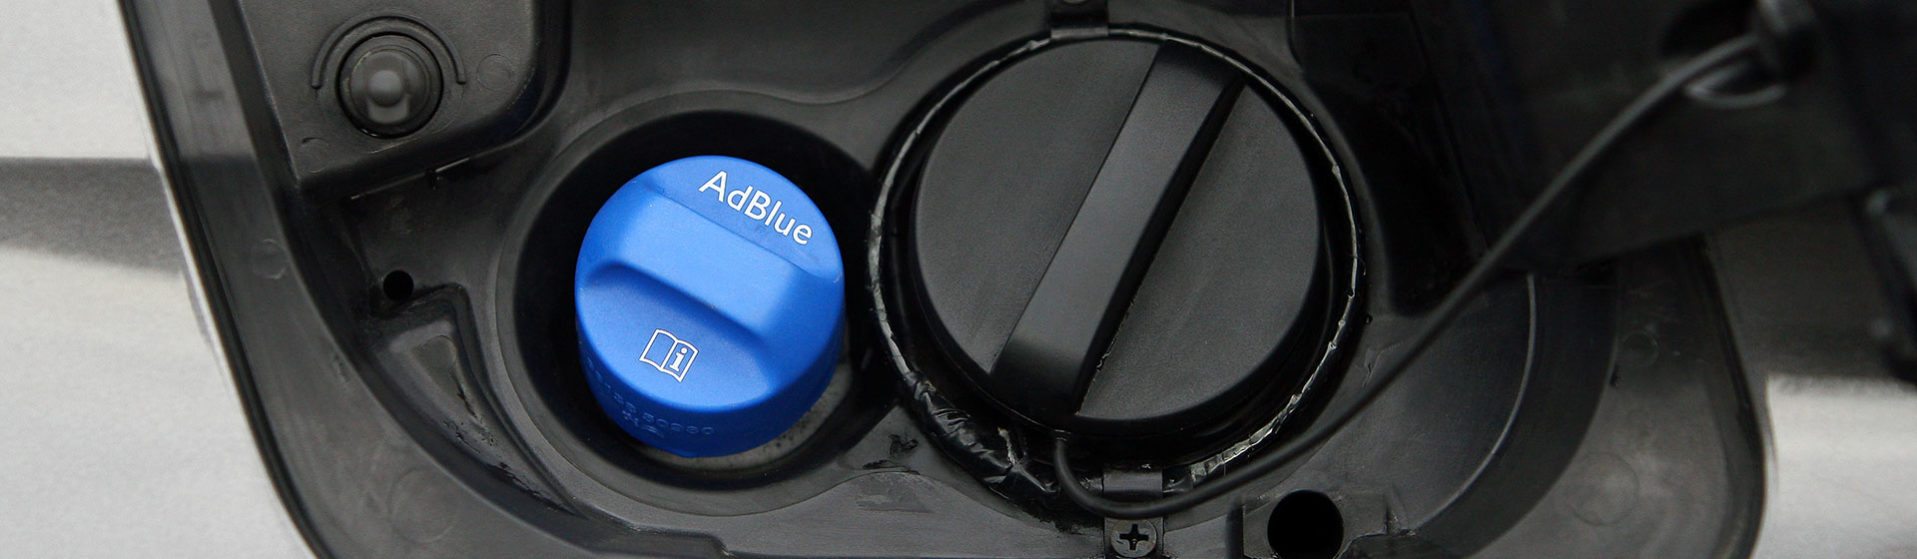 AdBlue Einfüllstutzen - Fahrzeug